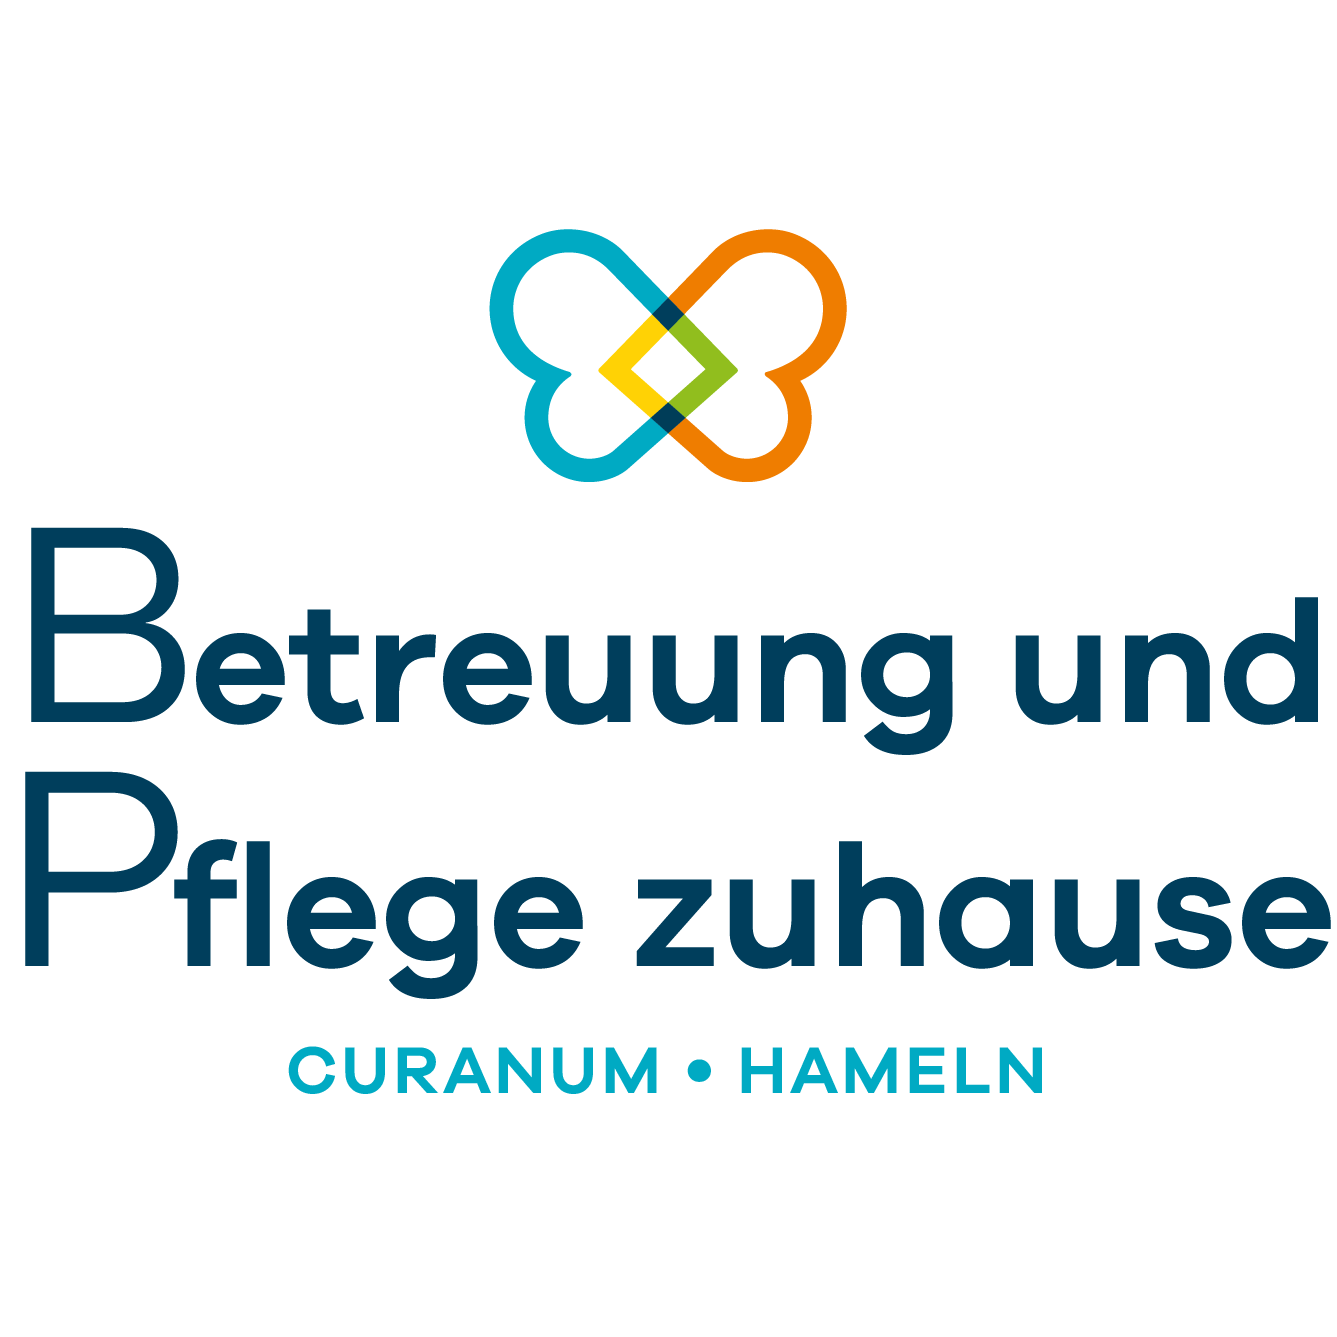 Betreuung und Pflege zuhause Curanum Hameln in Hameln - Logo